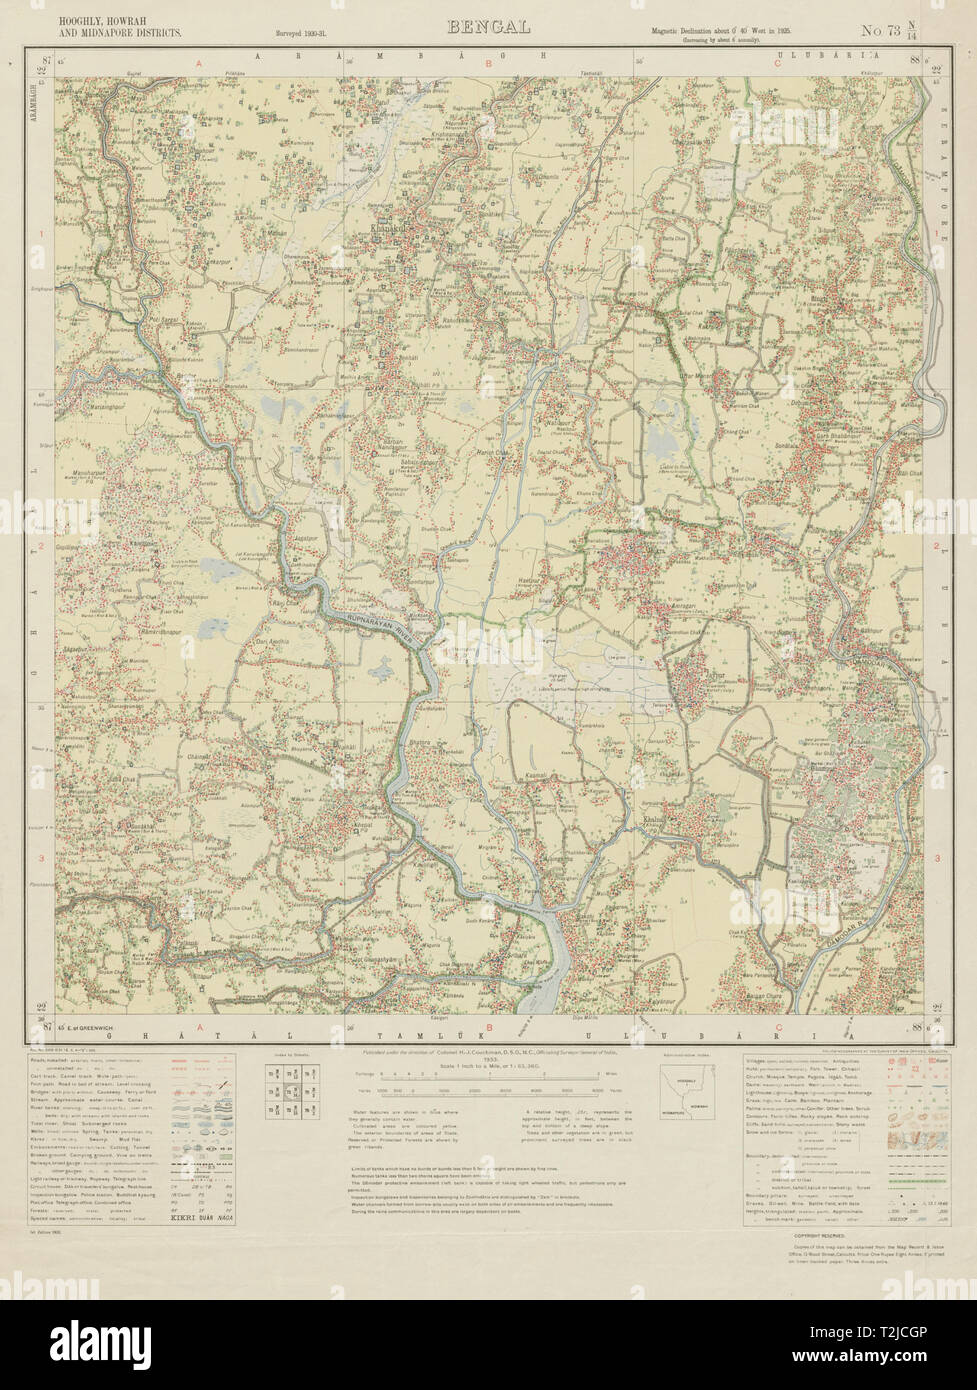 SURVEY OF INDIA 73 N/13 West Bengal Udaynarayanpur Kalna Khanakul 1933 old map Stock Photo